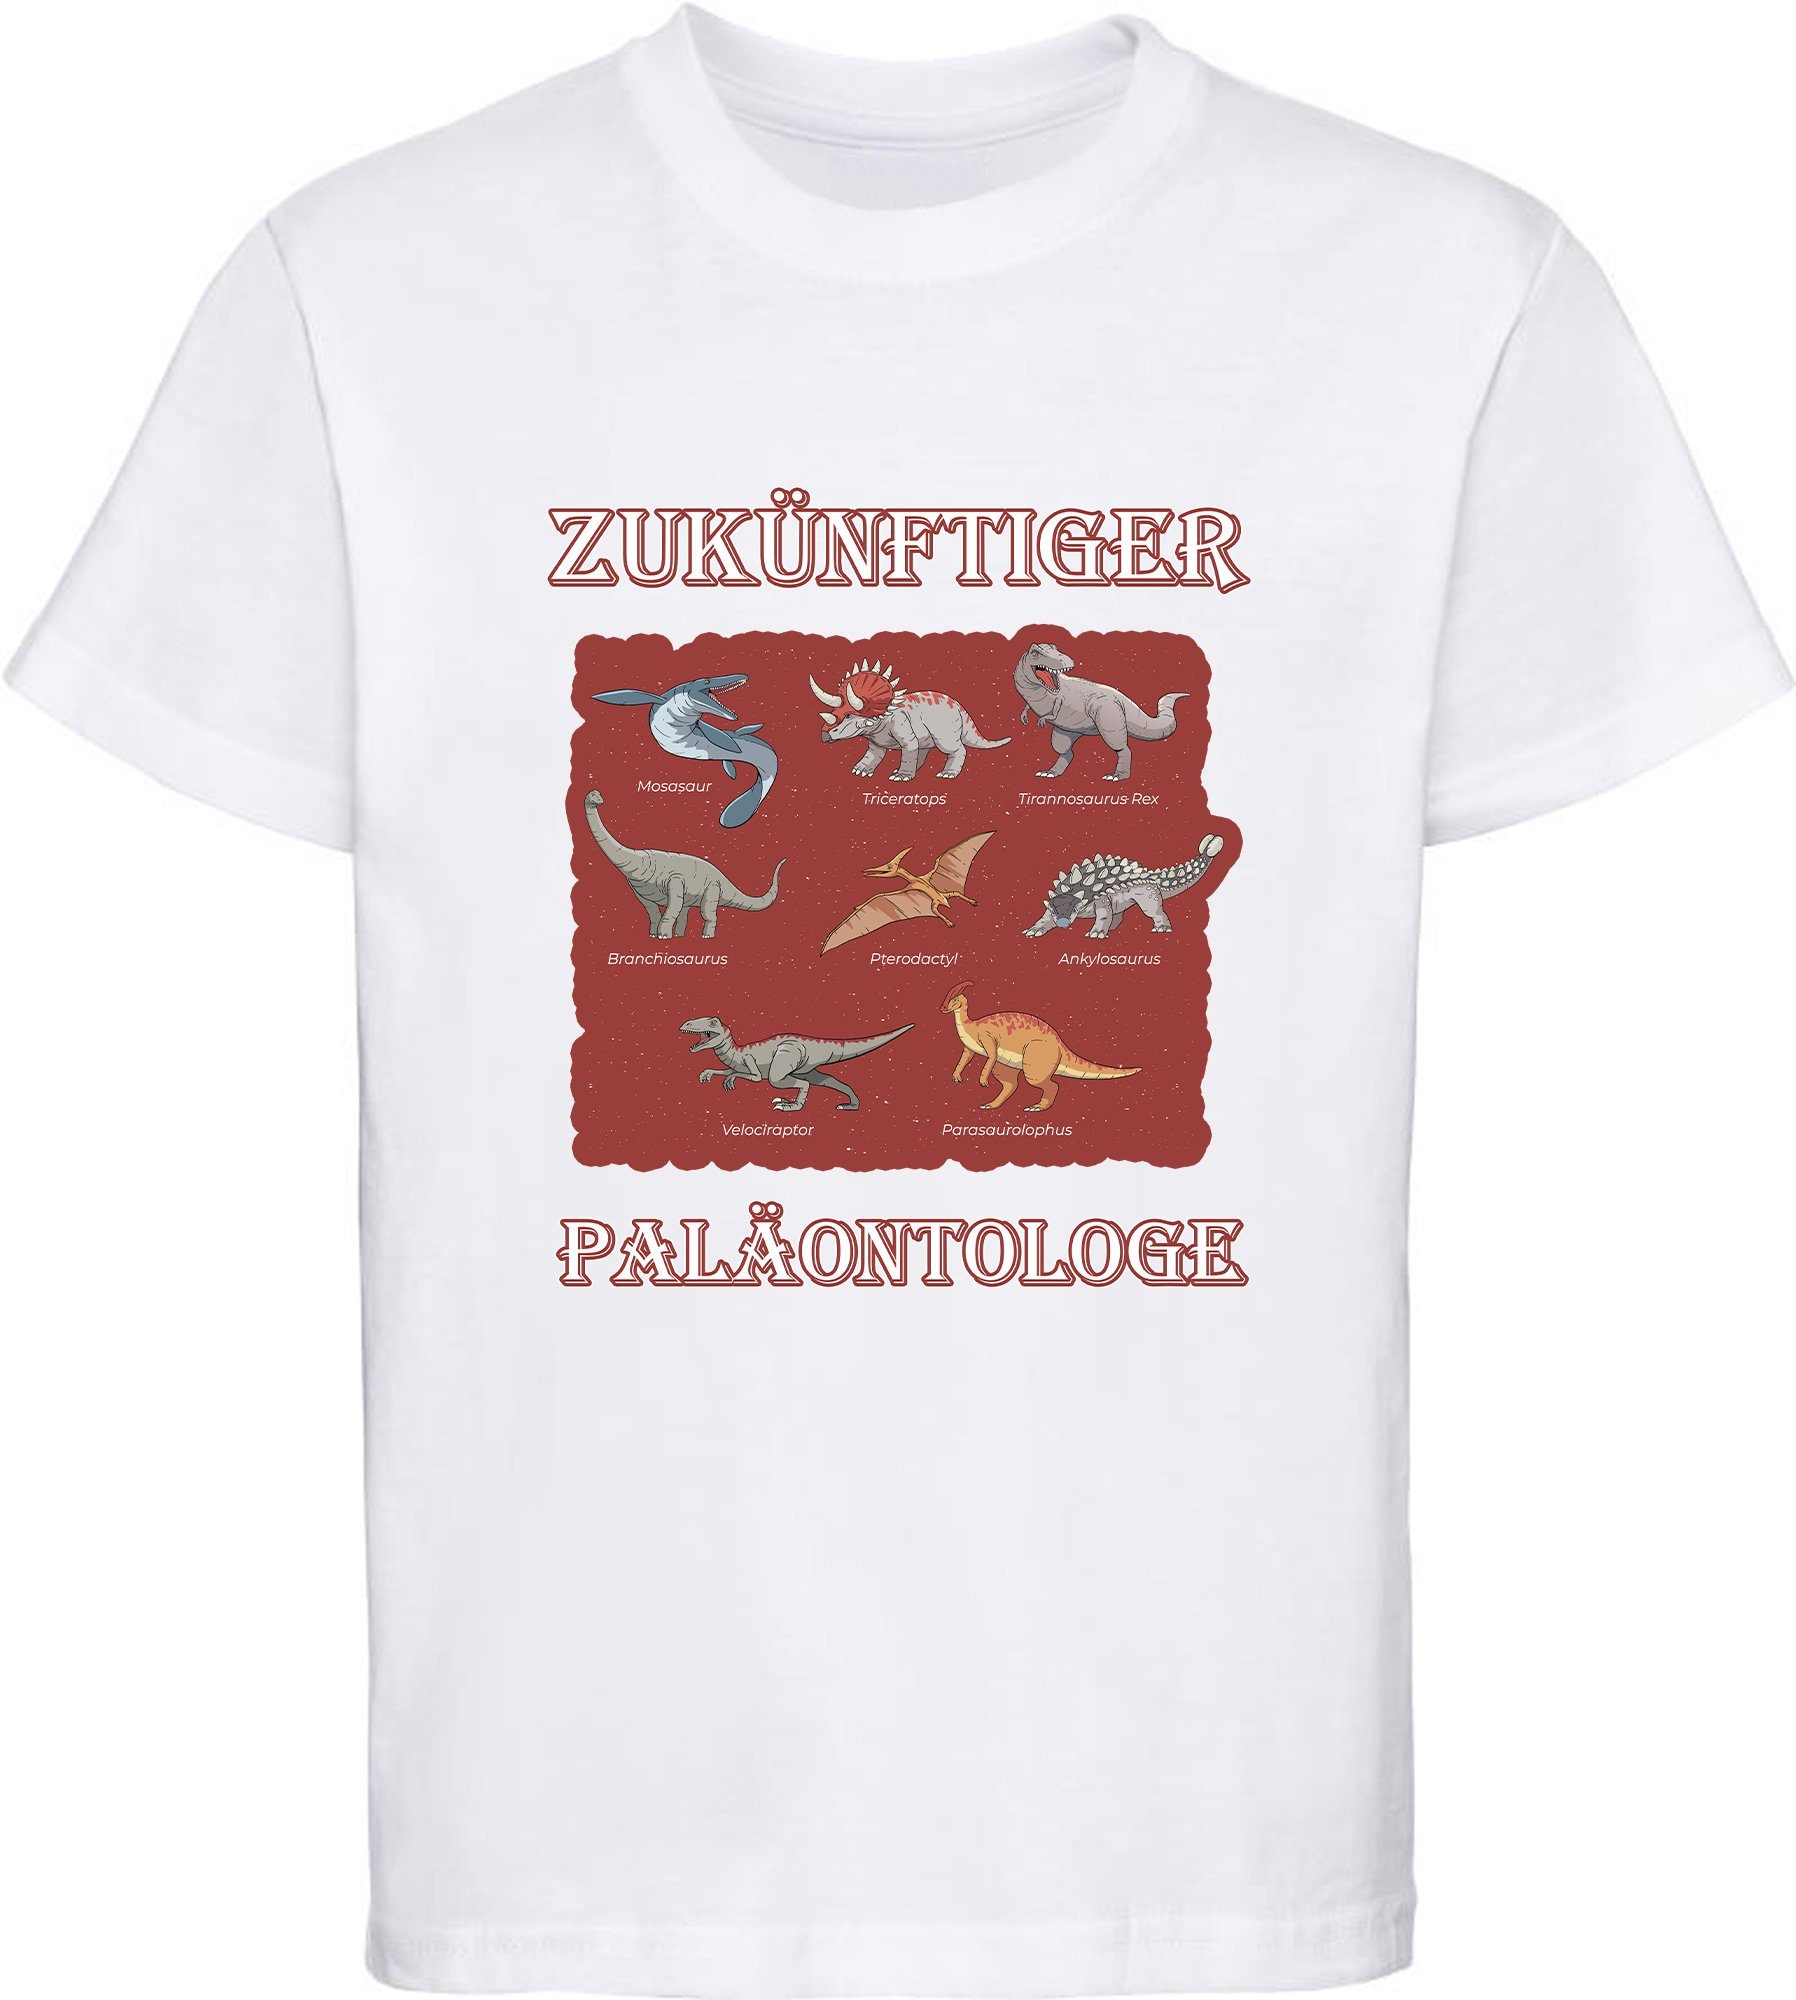 MyDesign24 T-Shirt Aufdruck, T-Shirt Paläontologe Dino 100% Kinder mit Baumwolle vielen bedrucktes i50 weiss mit Dinosauriern